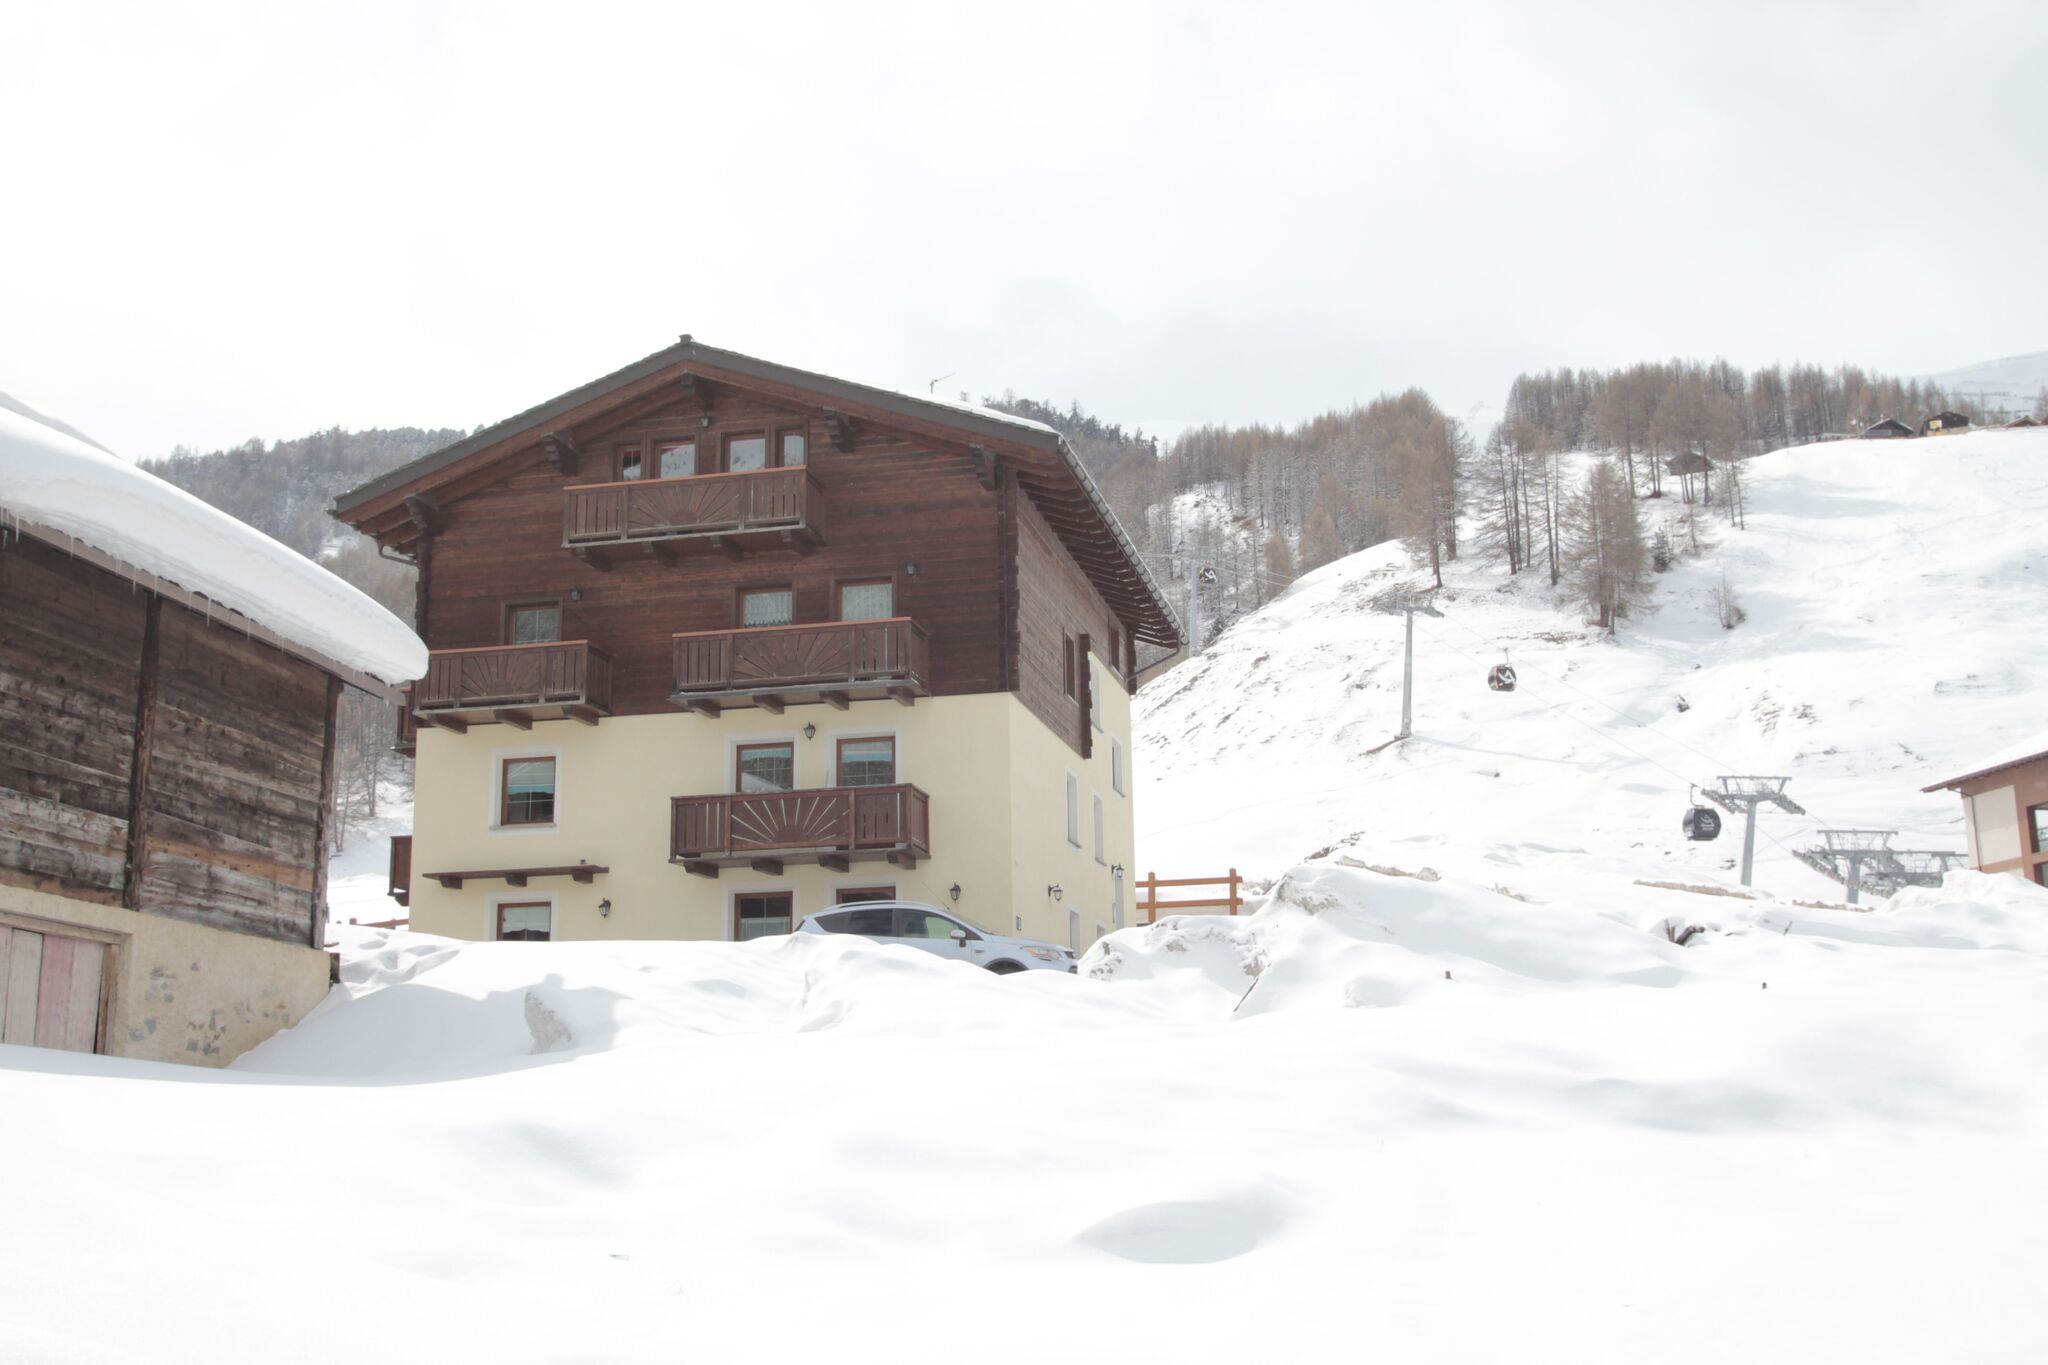 Wohnung in Livigno, in der Nähe des Skigebiets